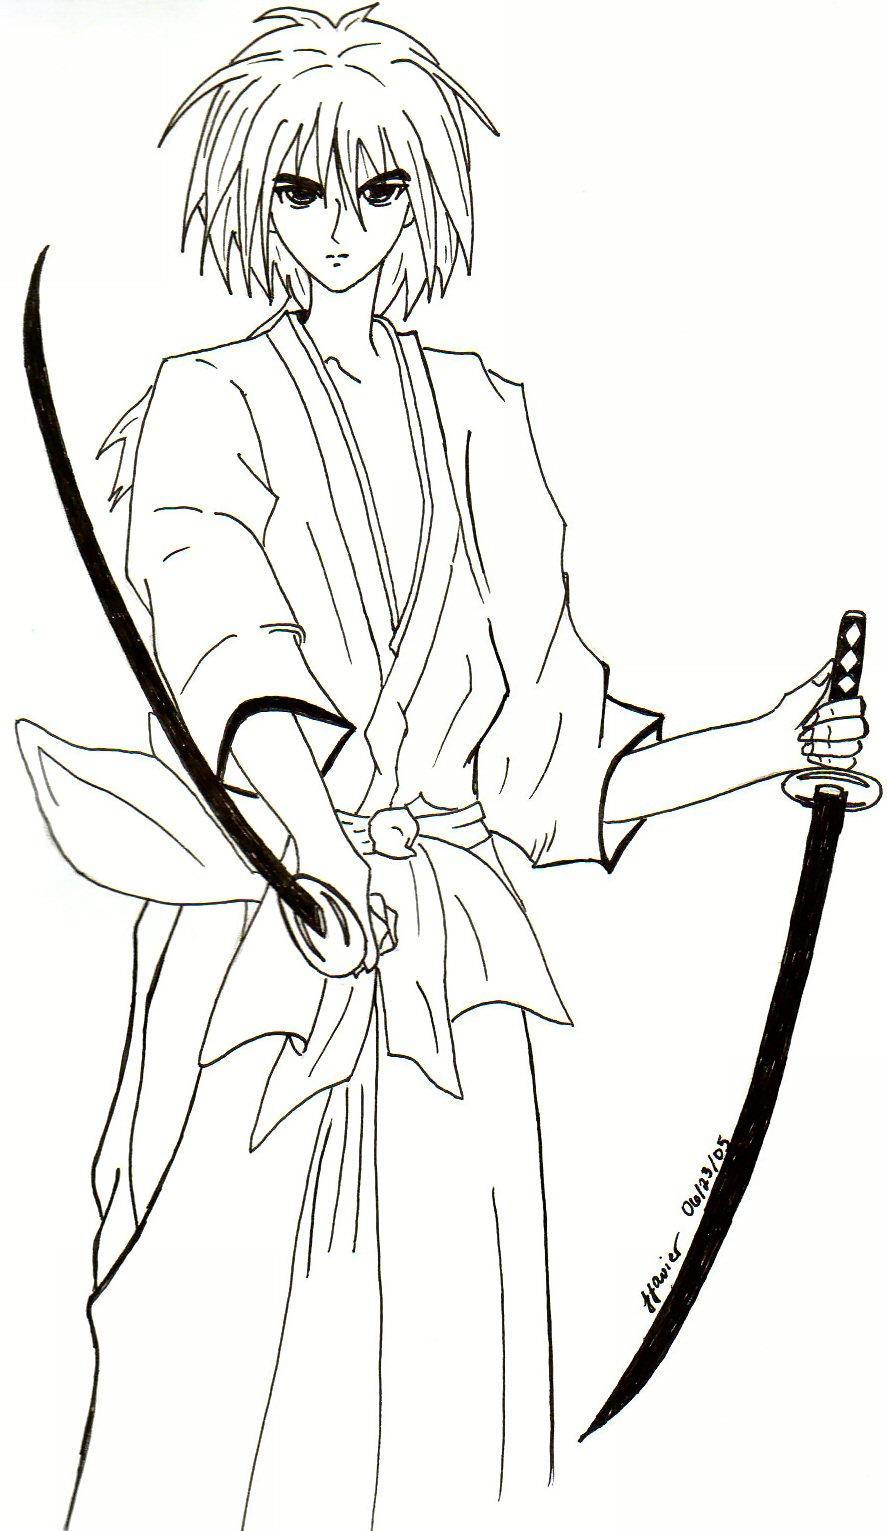 Kenshin wielding two swords by metalmilitia